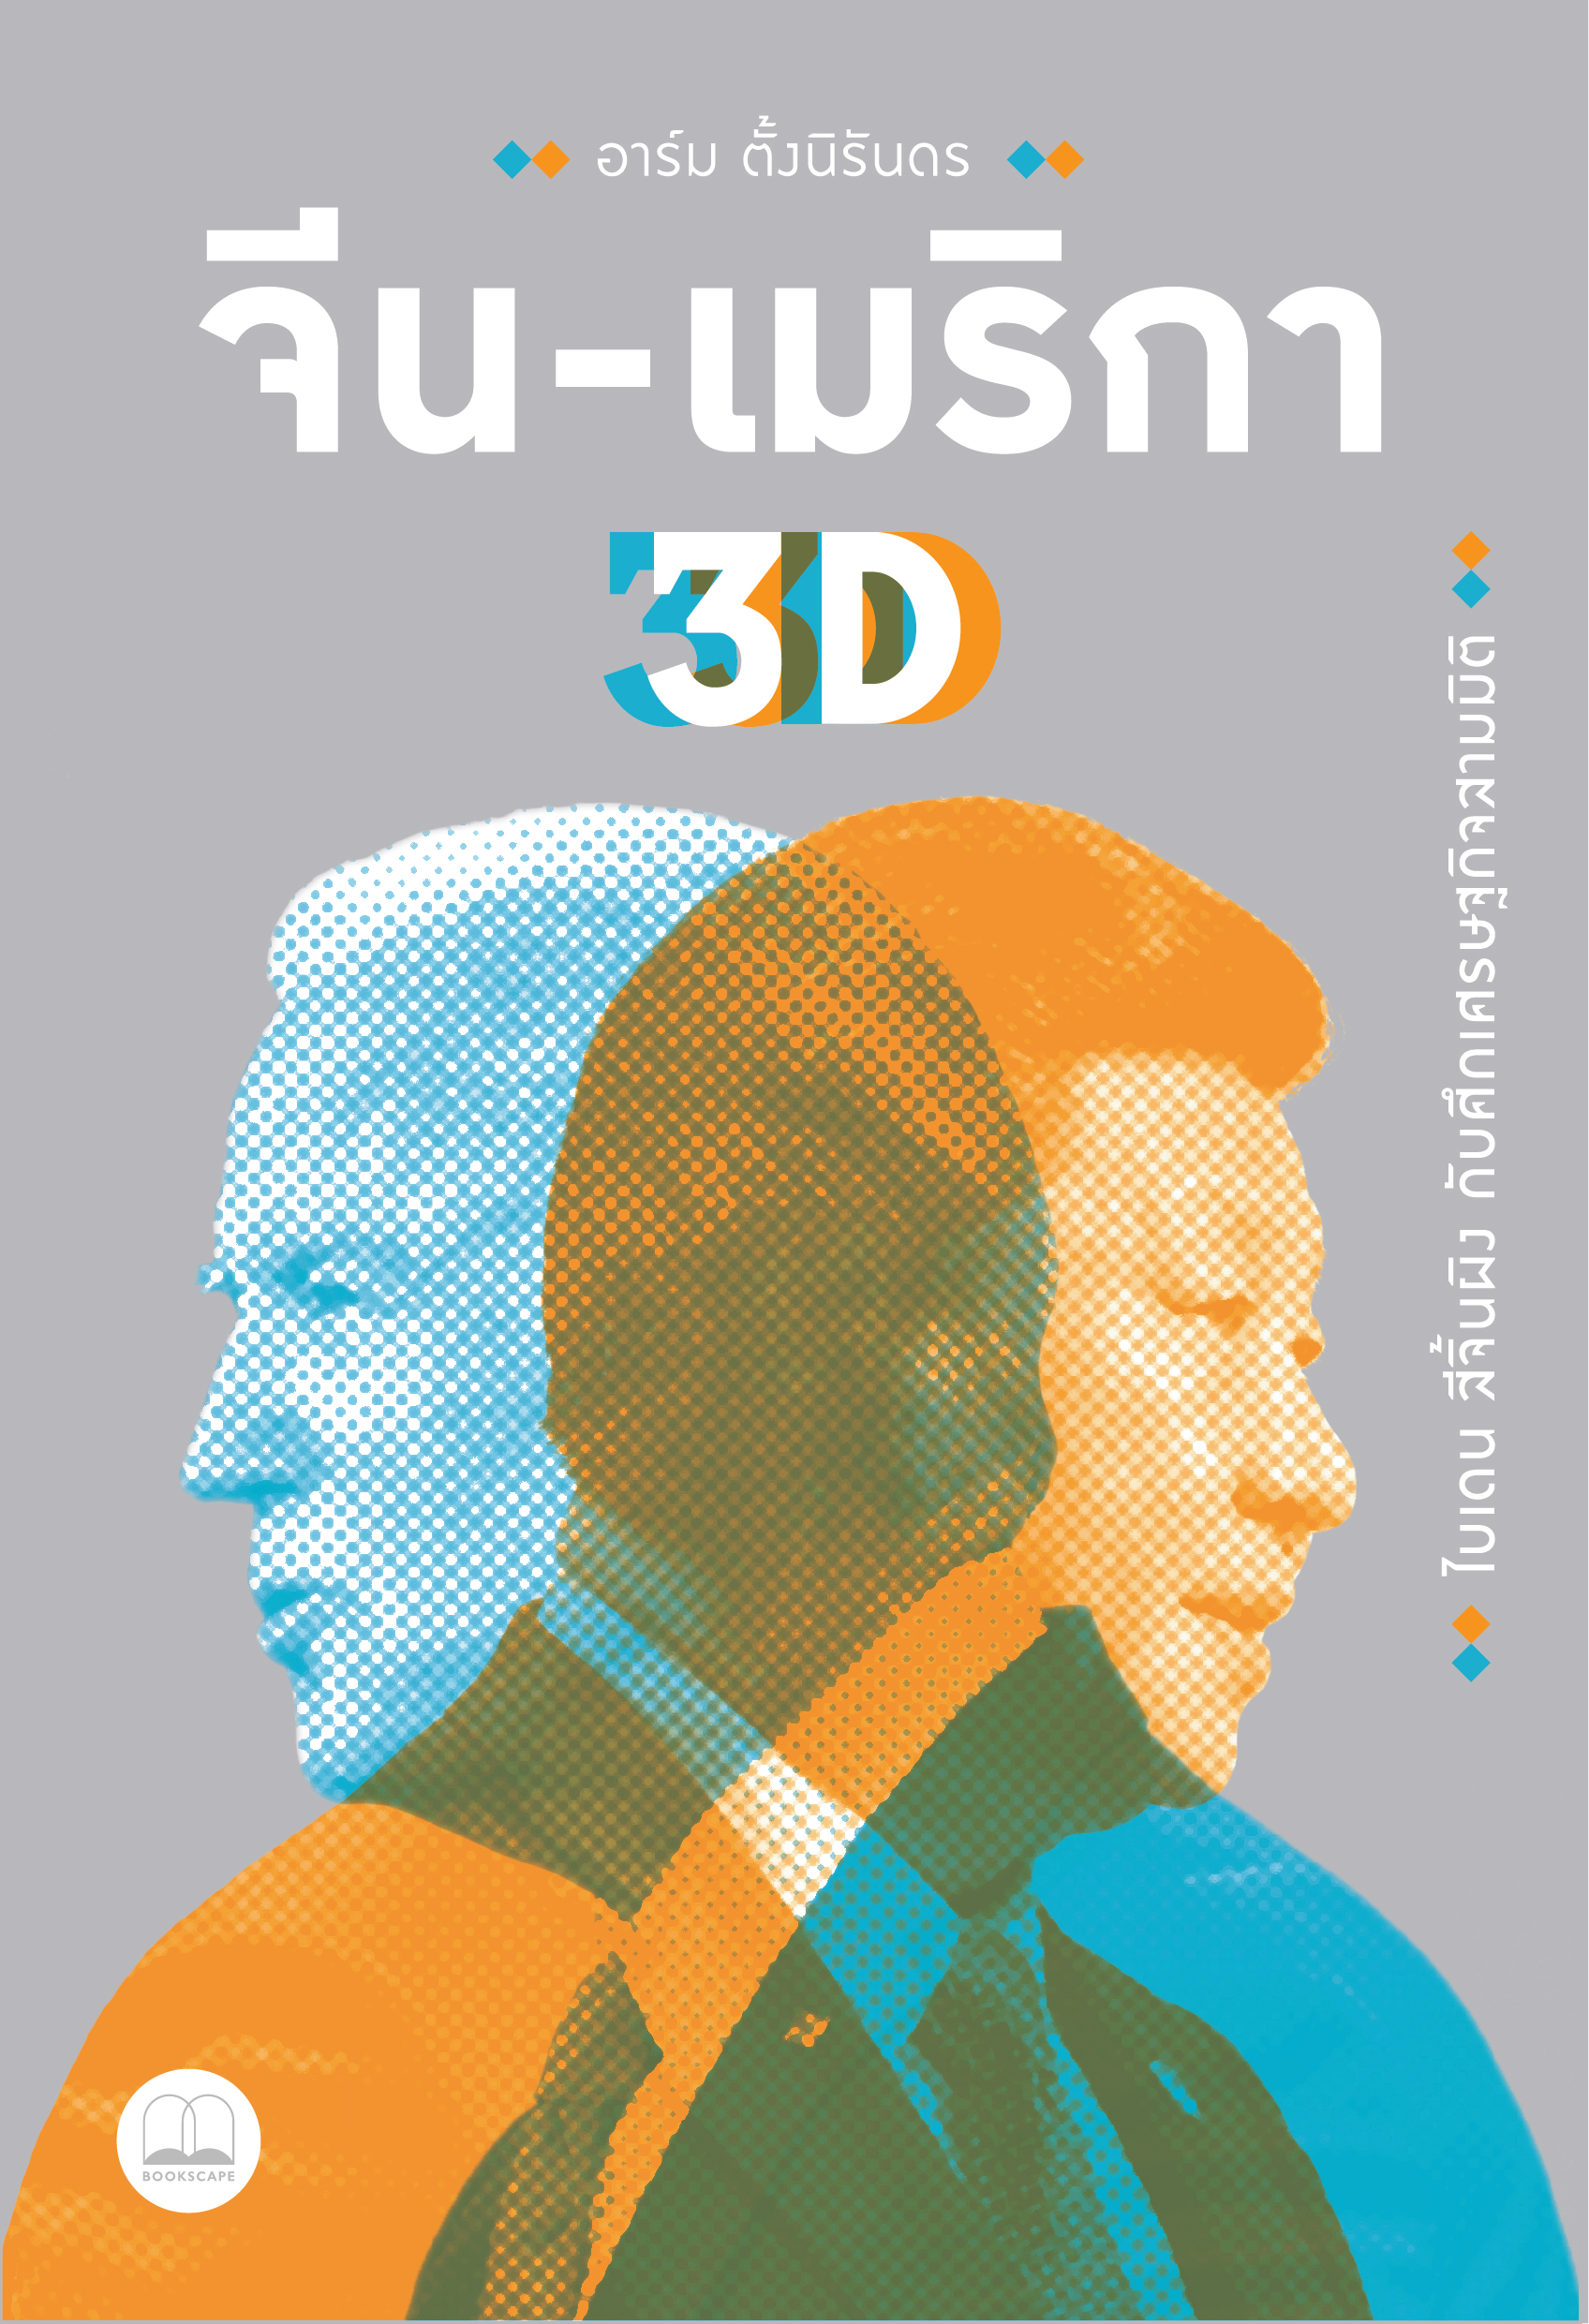 จีน-เมริกา 3D: ไบเดน สีจิ้นผิง กับศึกเศรษฐกิจสามมิติ / อาร์ม ตั้งนิรันดร เขียน / Bookscape